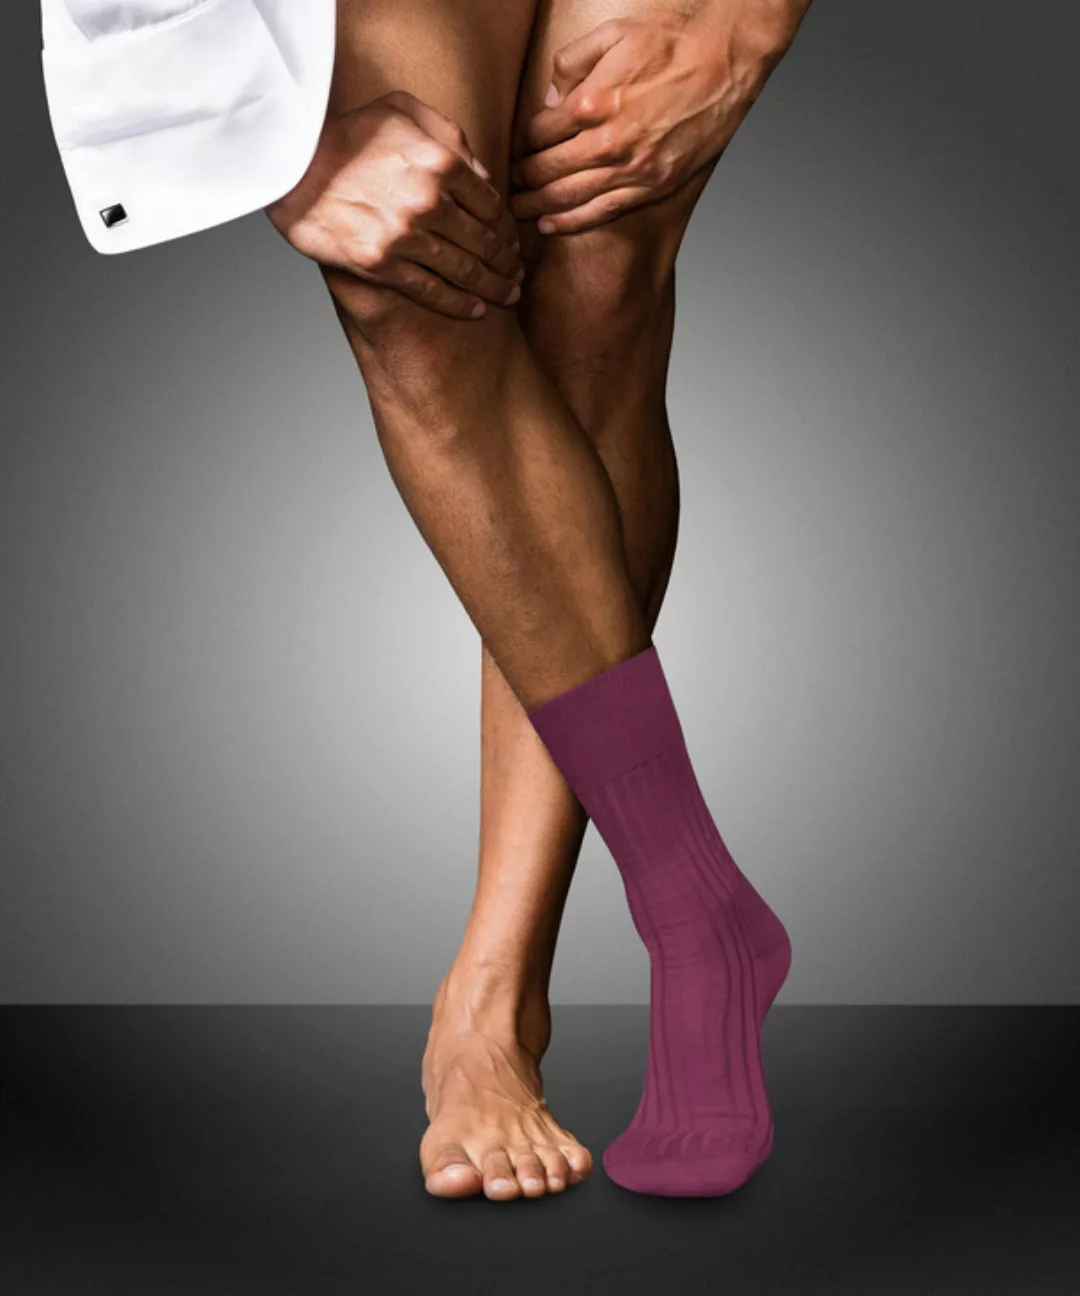 FALKE No. 13 Finest Piuma Cotton Gentlemen Socken, Herren, 39-40, Pink, Uni günstig online kaufen